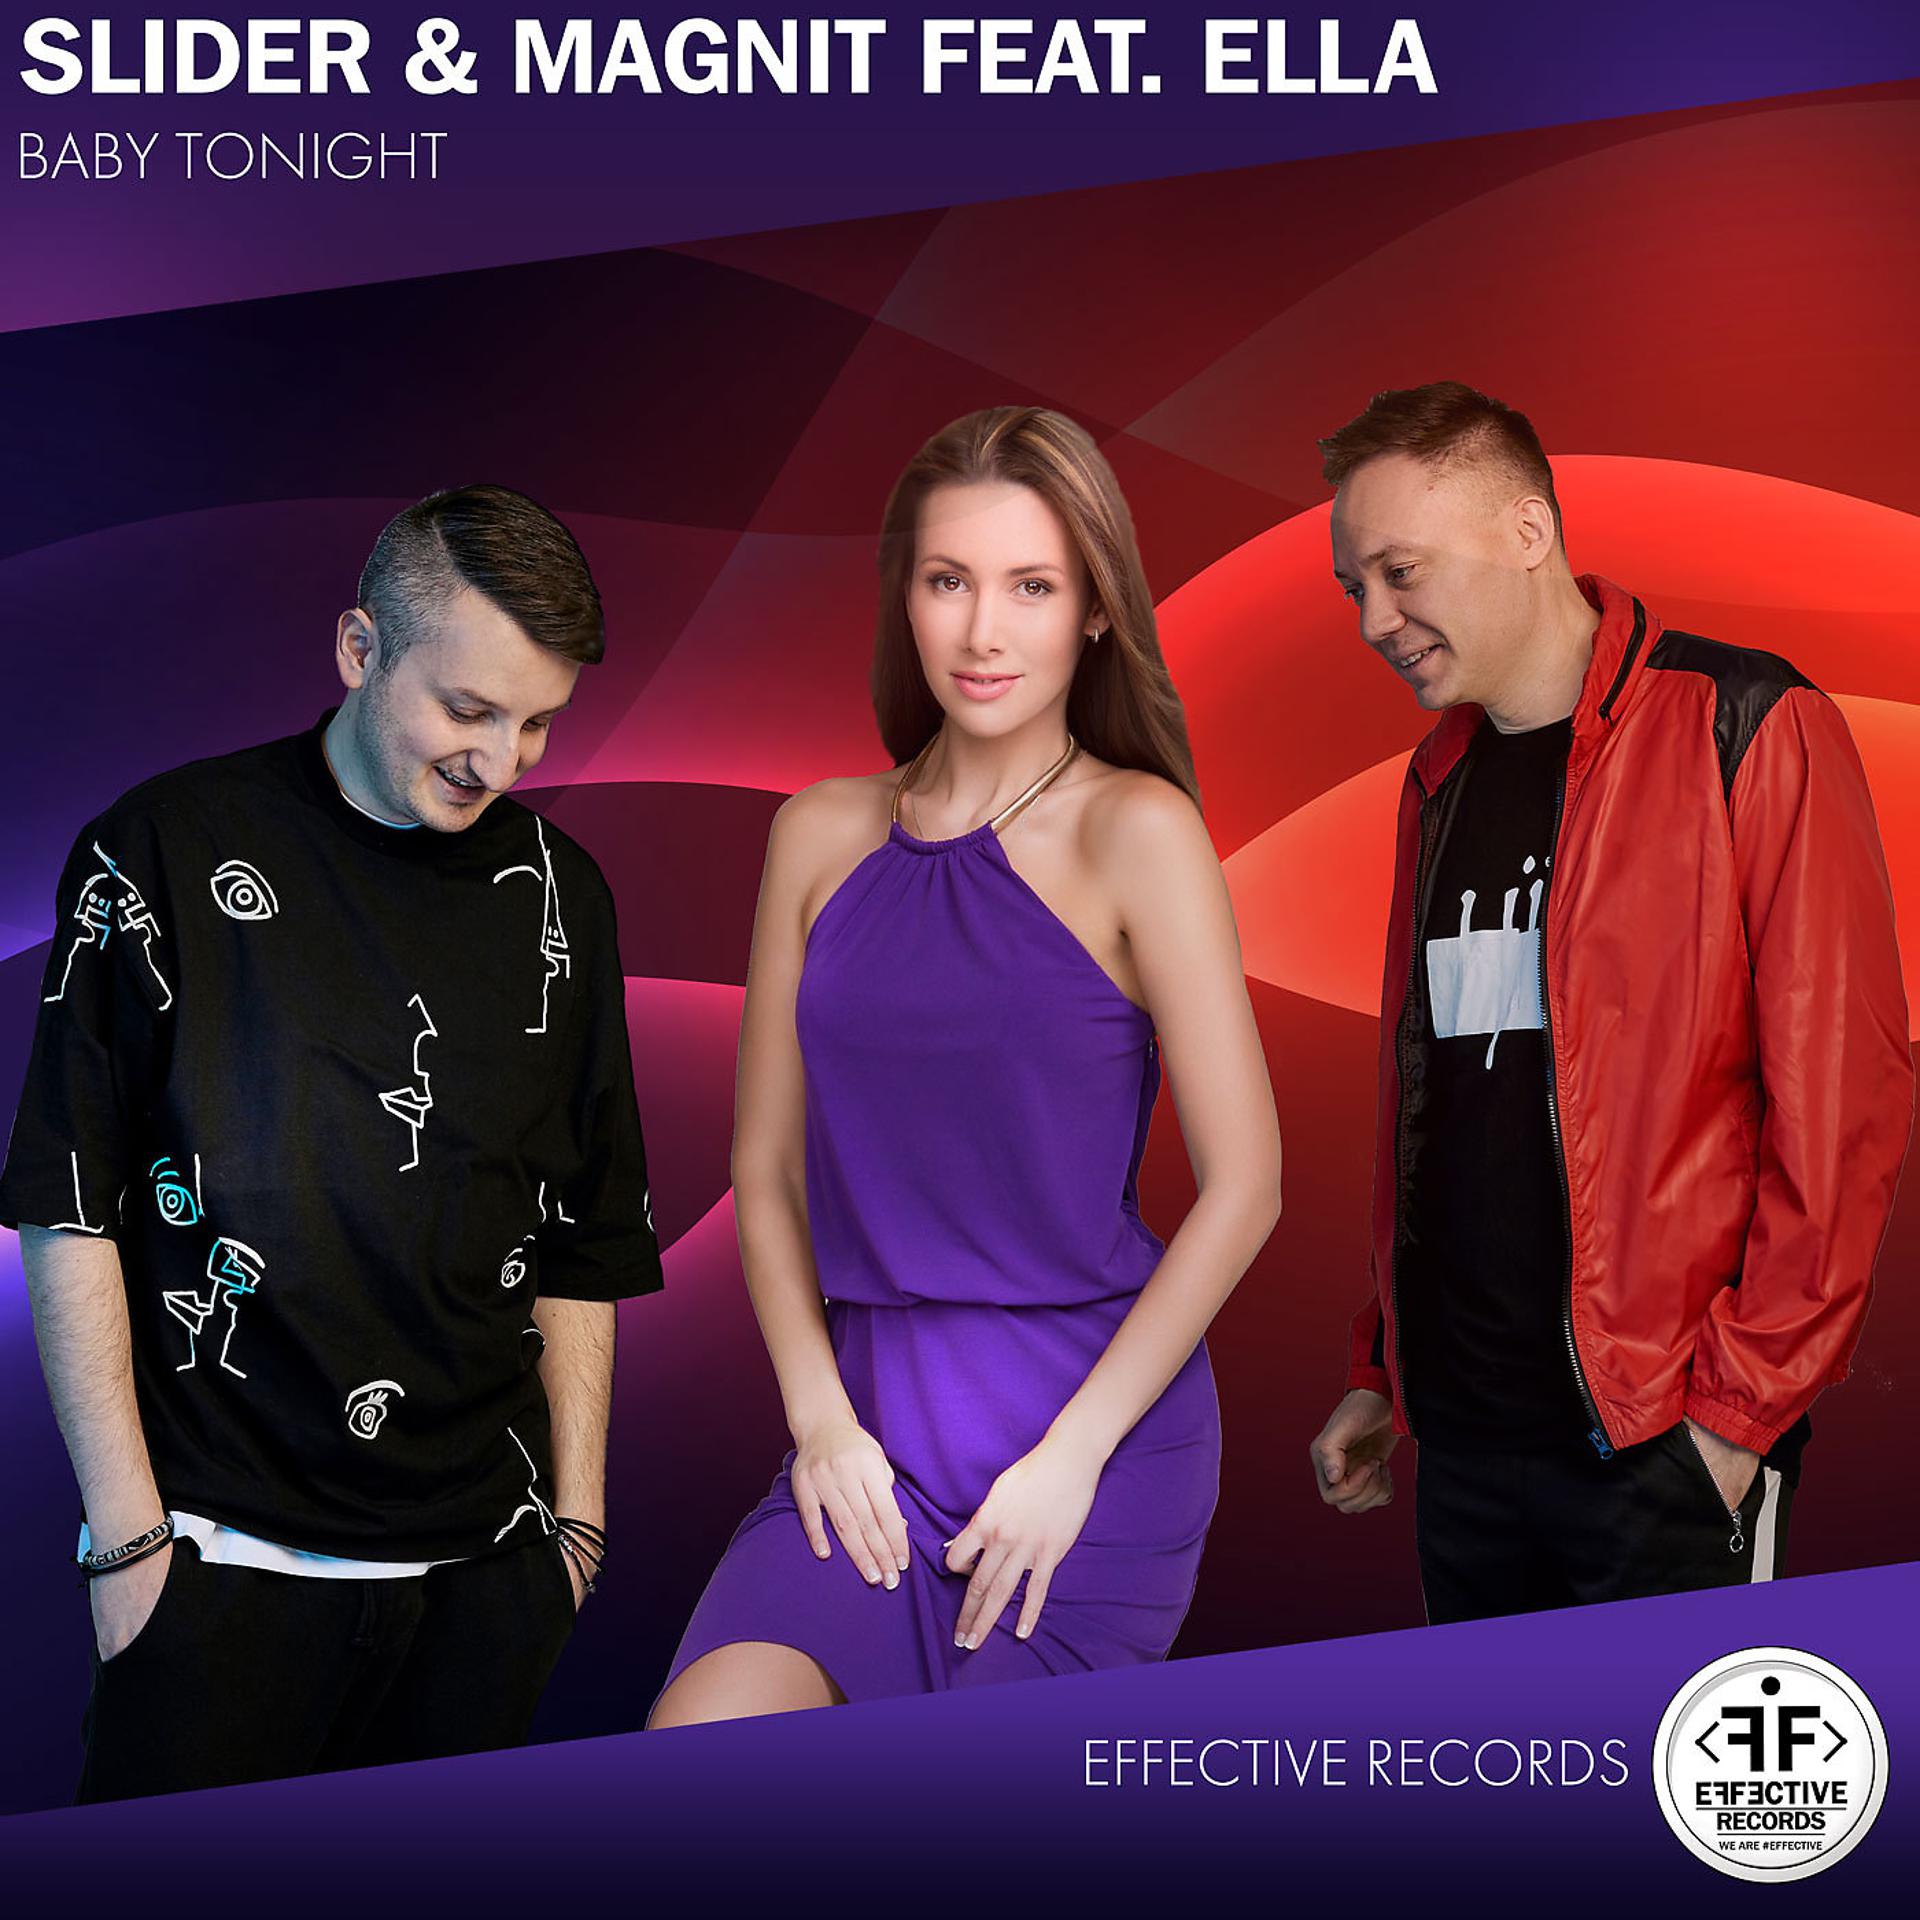 Слайдер песни. Слайдер и магнит. Slider Magnit туда. Slider & Magnit feat. Ella. Slider Magnit фото.